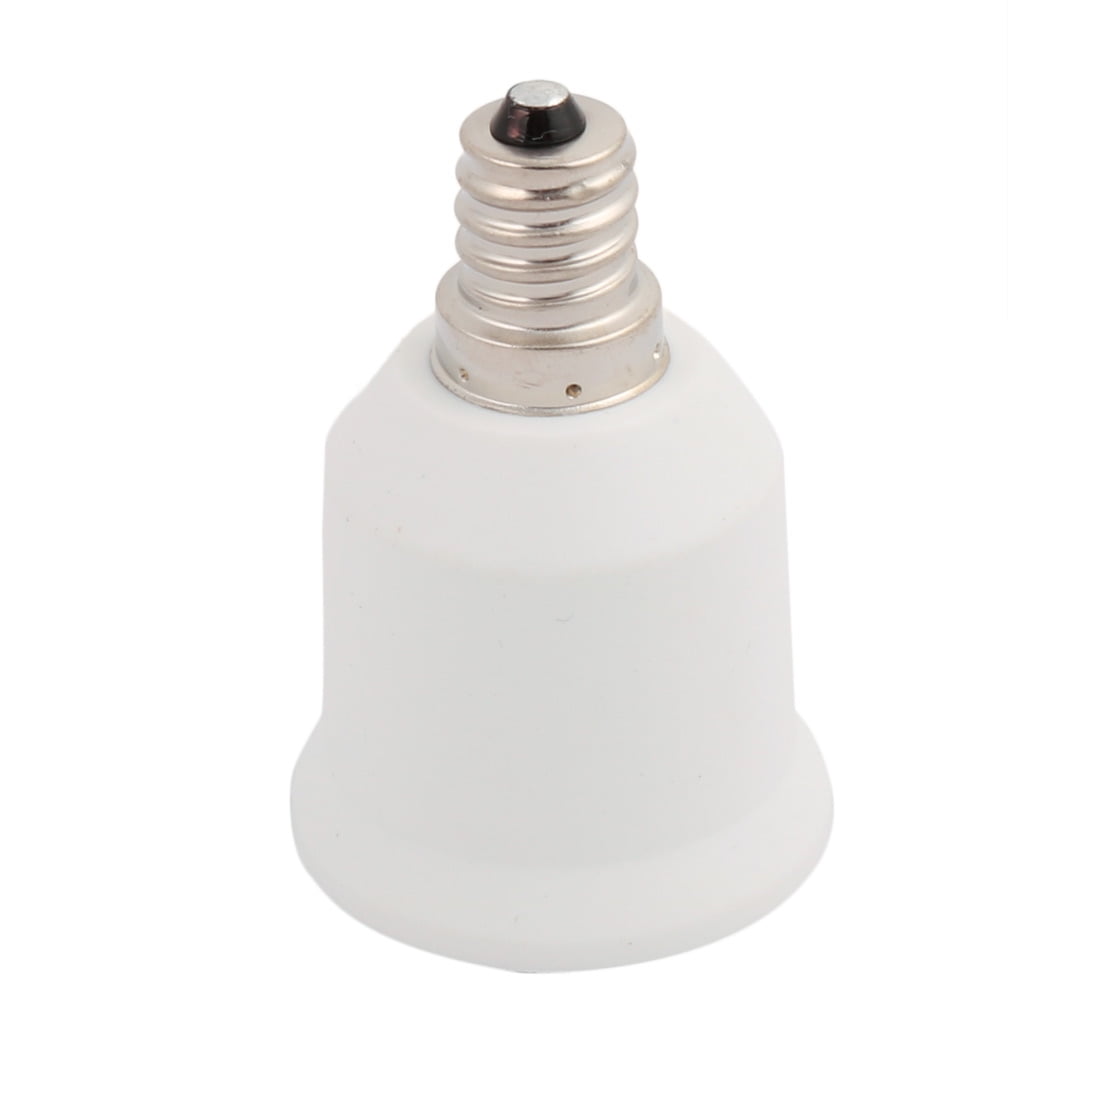 Kamas Hot Sale BC B22 to ES E27 Screw Light Bulb Adaptor Lamp Holder Converter Lamp Bases White